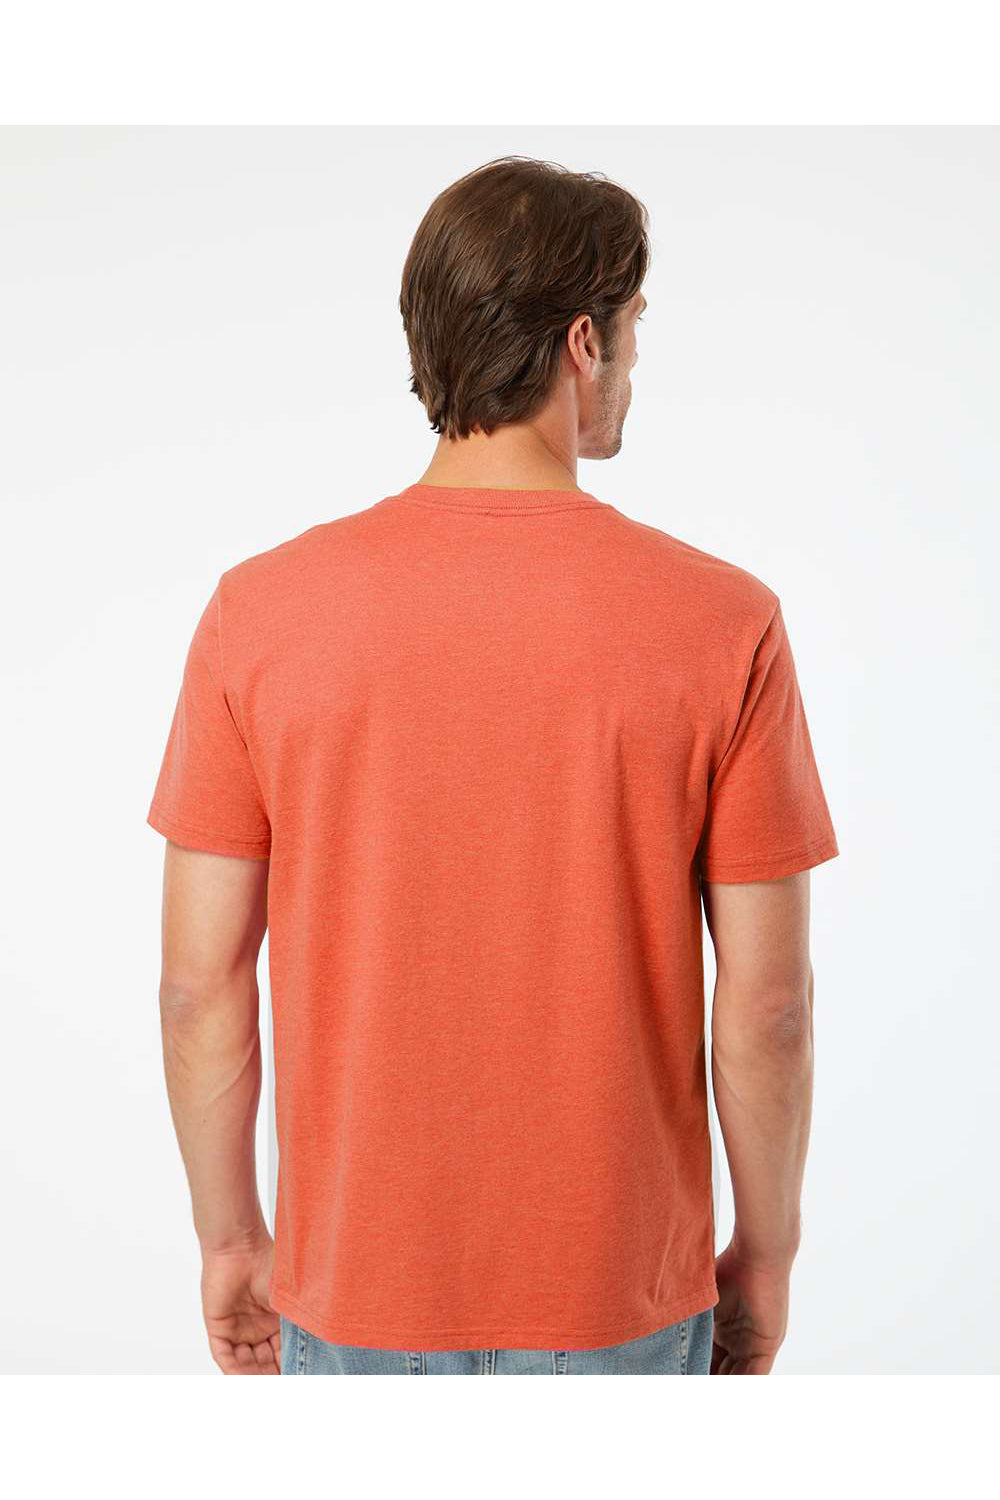 Kastlfel 2010 Mens RecycledSoft Short Sleve Crewneck T-Shirt Orange Model Back